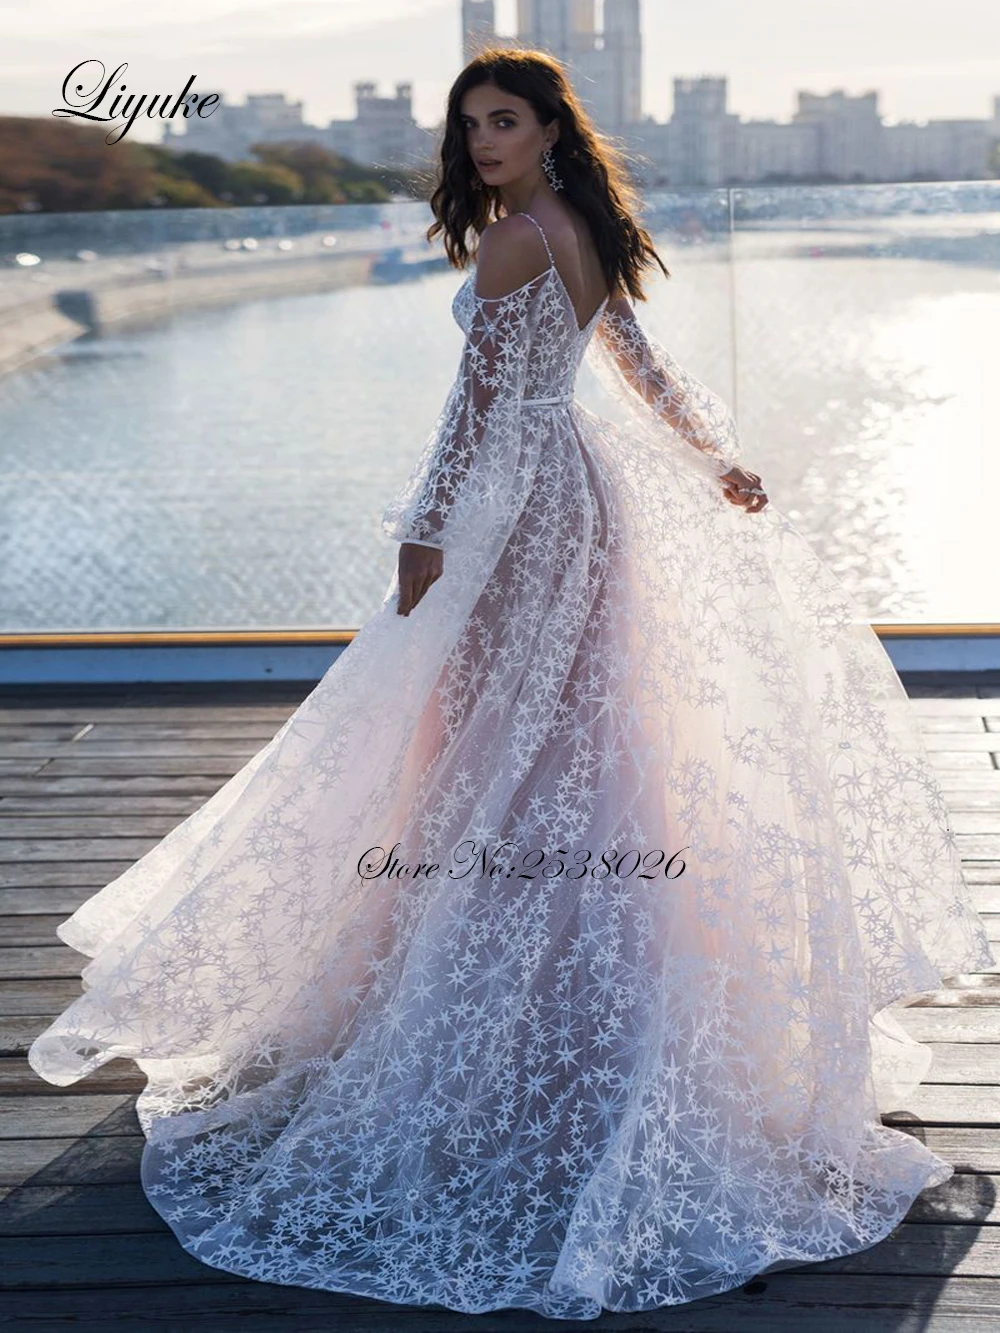 Liyuke Спагетти ремень Великолепная линия звезда кружева свадебное платье атлас с пышной юбкой Свадебное платье